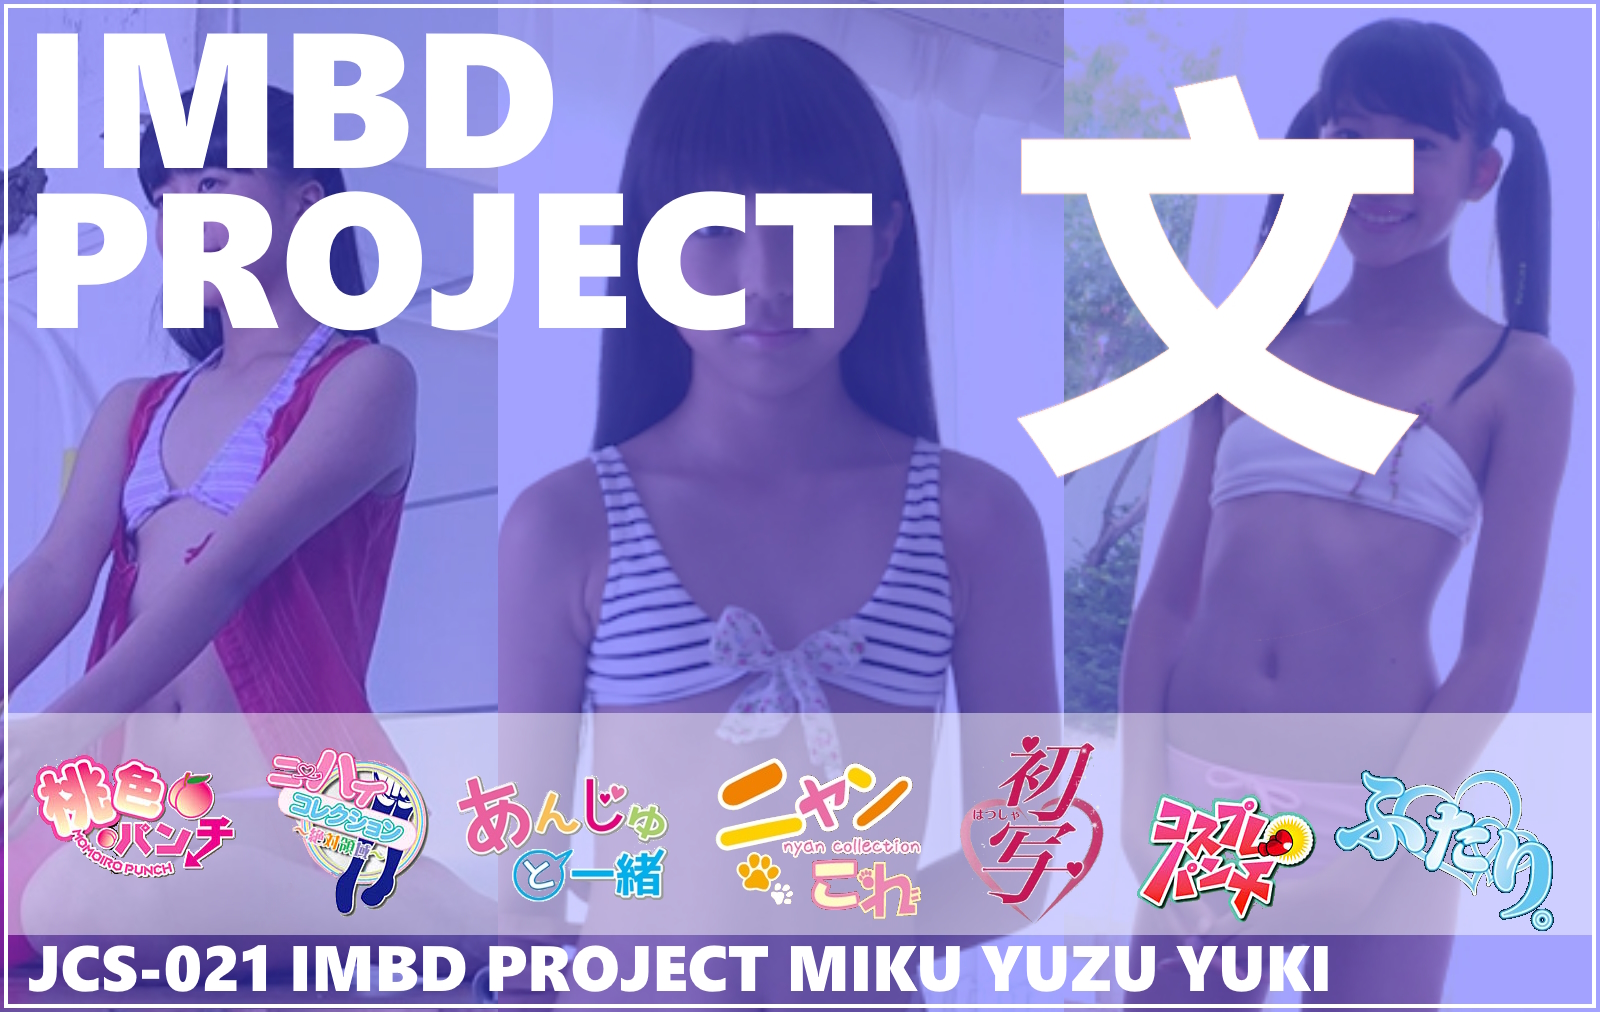 JCS-021 IMBD Project Miku + Yuzu + Yuki